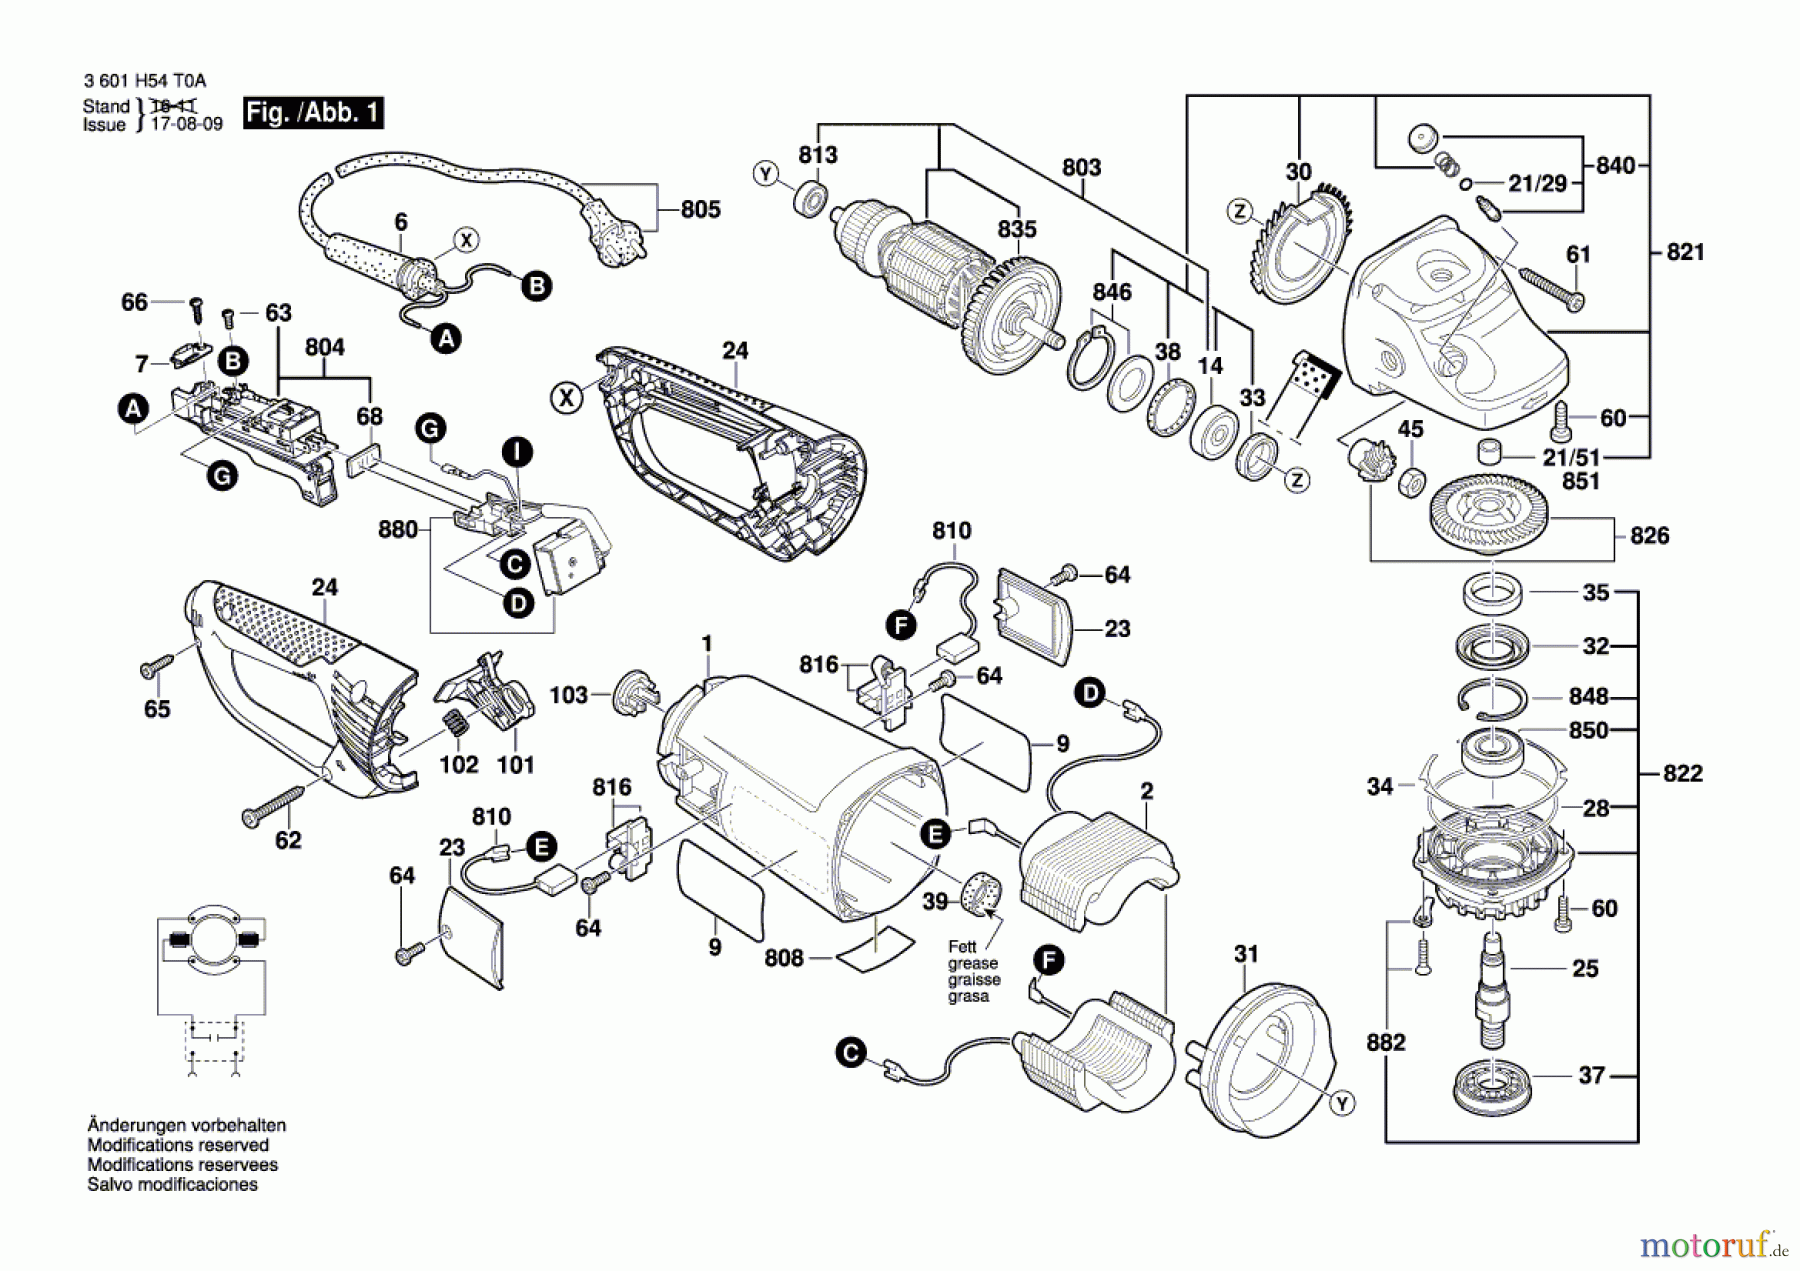  Bosch Werkzeug Winkelschleifer BAG 230-1 CLB Seite 1